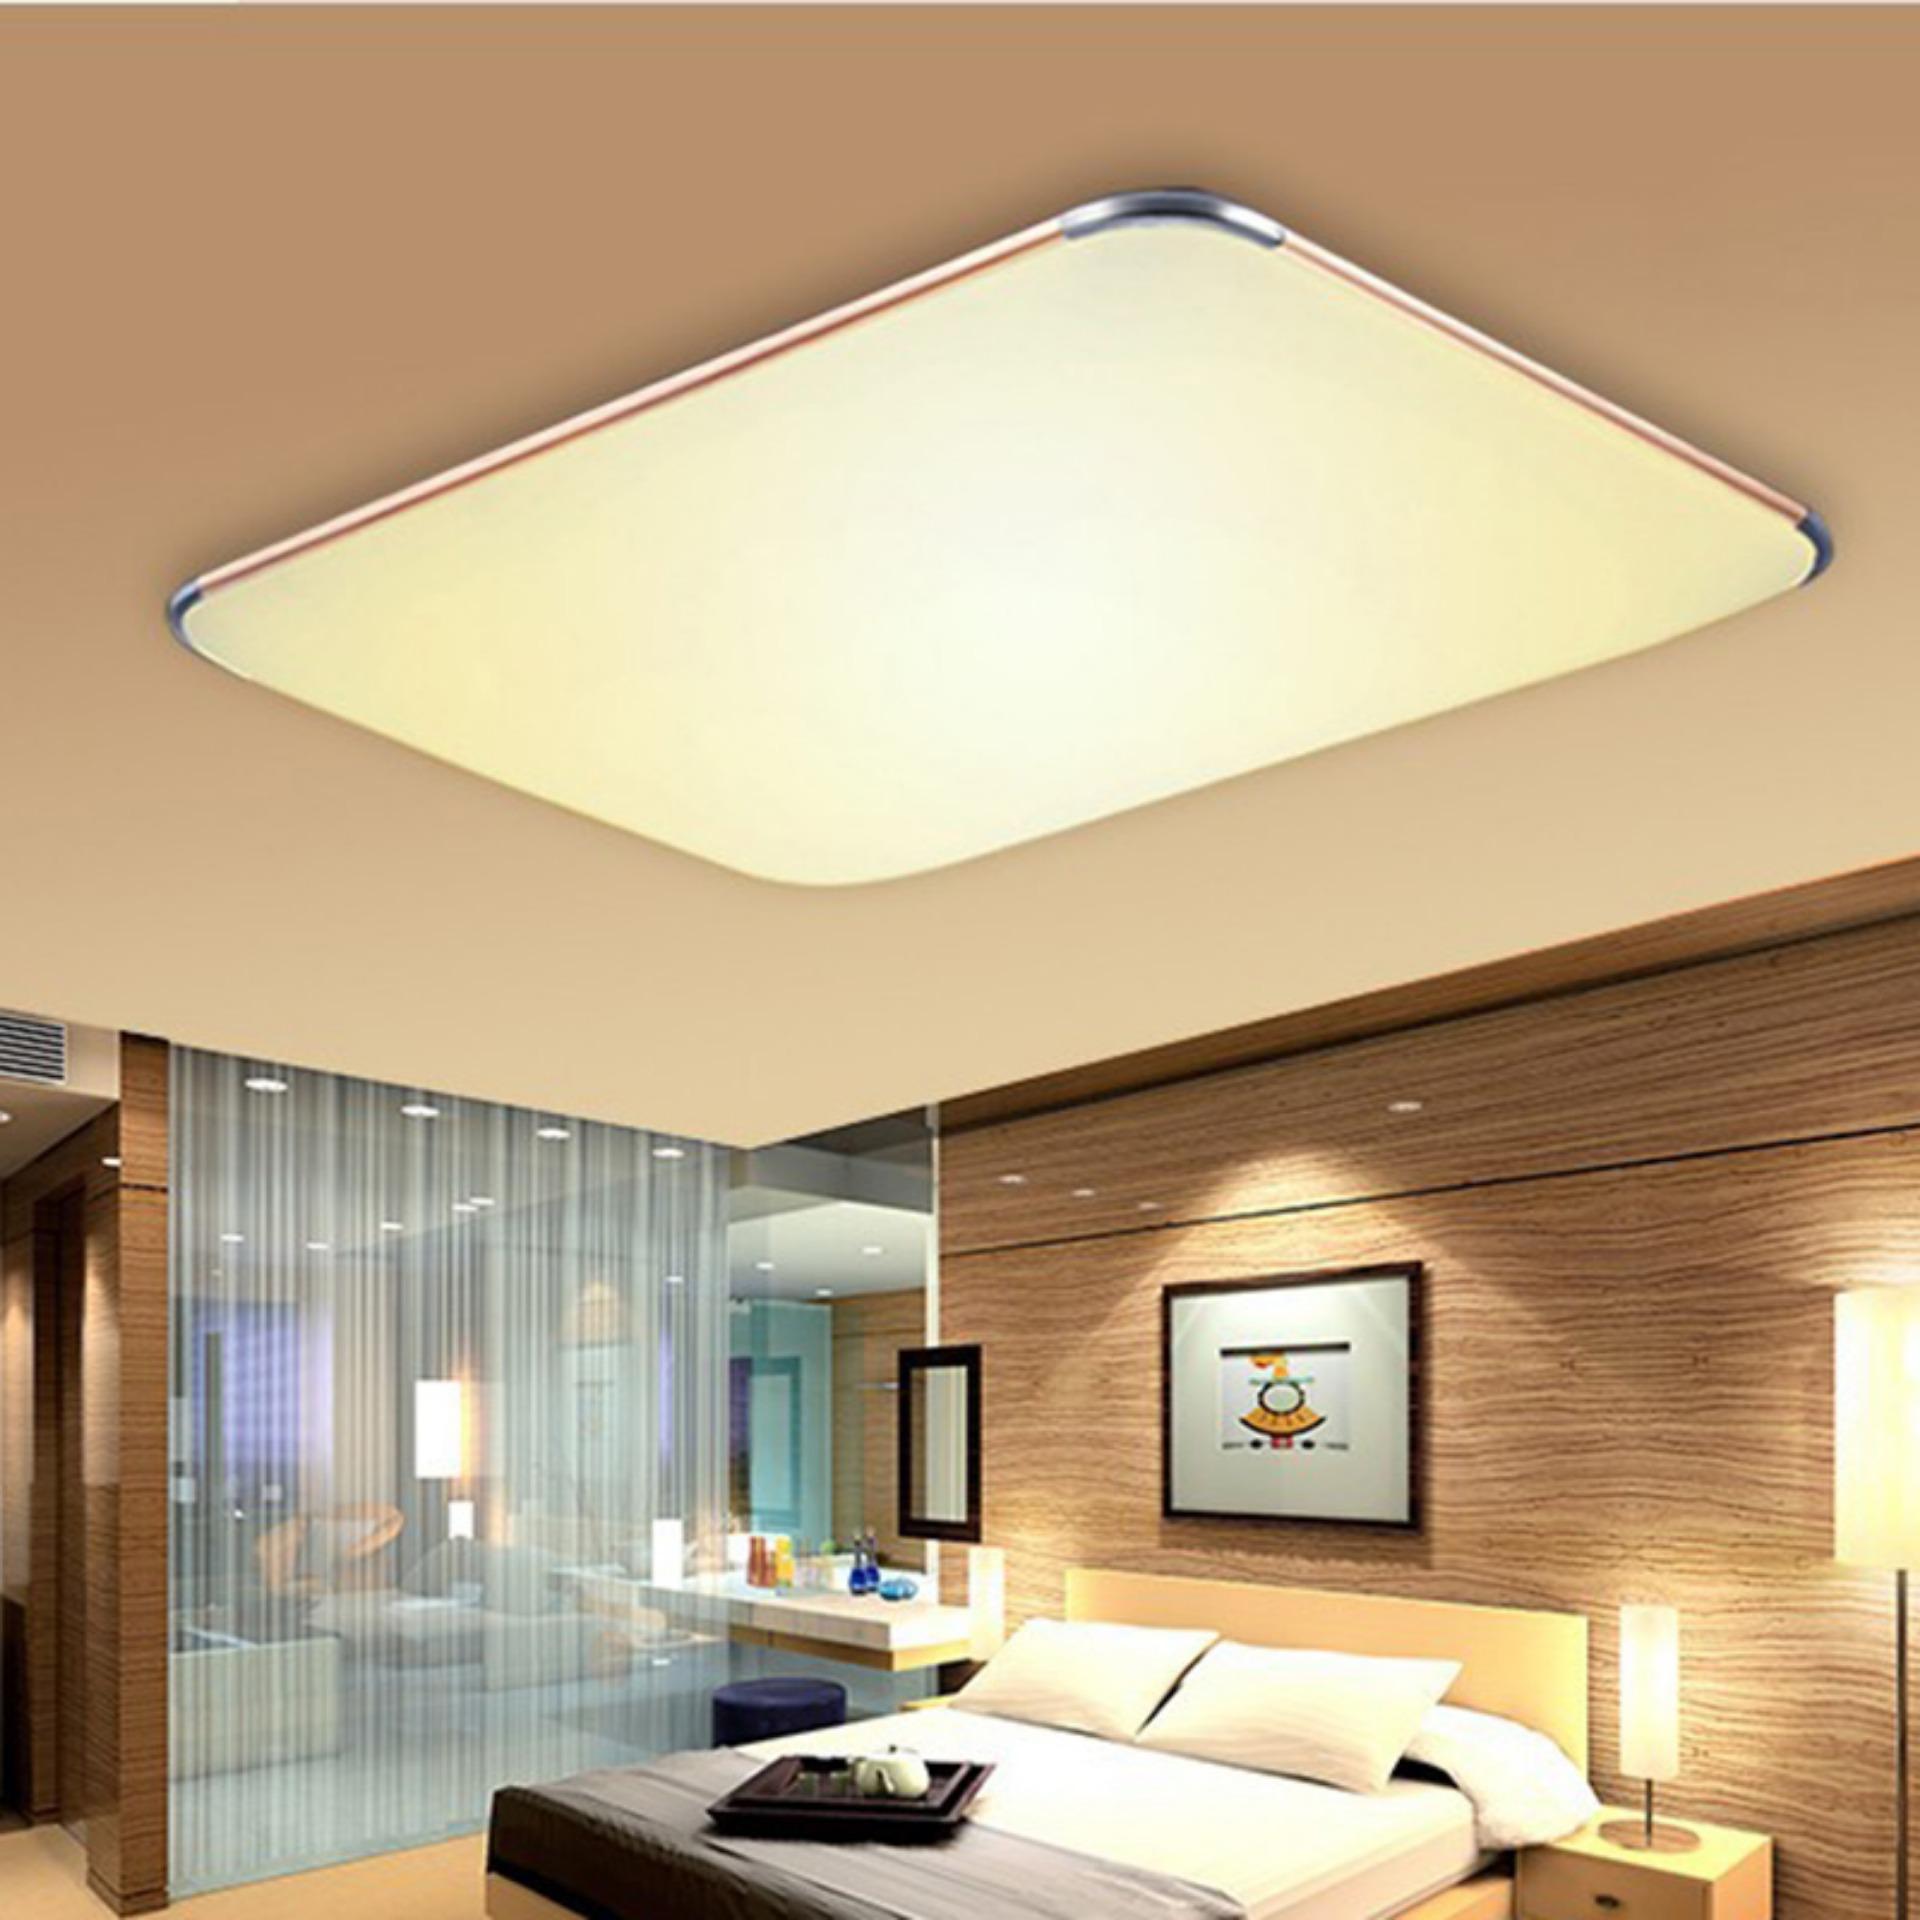 Newworldmall LED Panel Ceiling Light Kitchen Living Room Flush Lamp Downlight 15W Warm White - intl